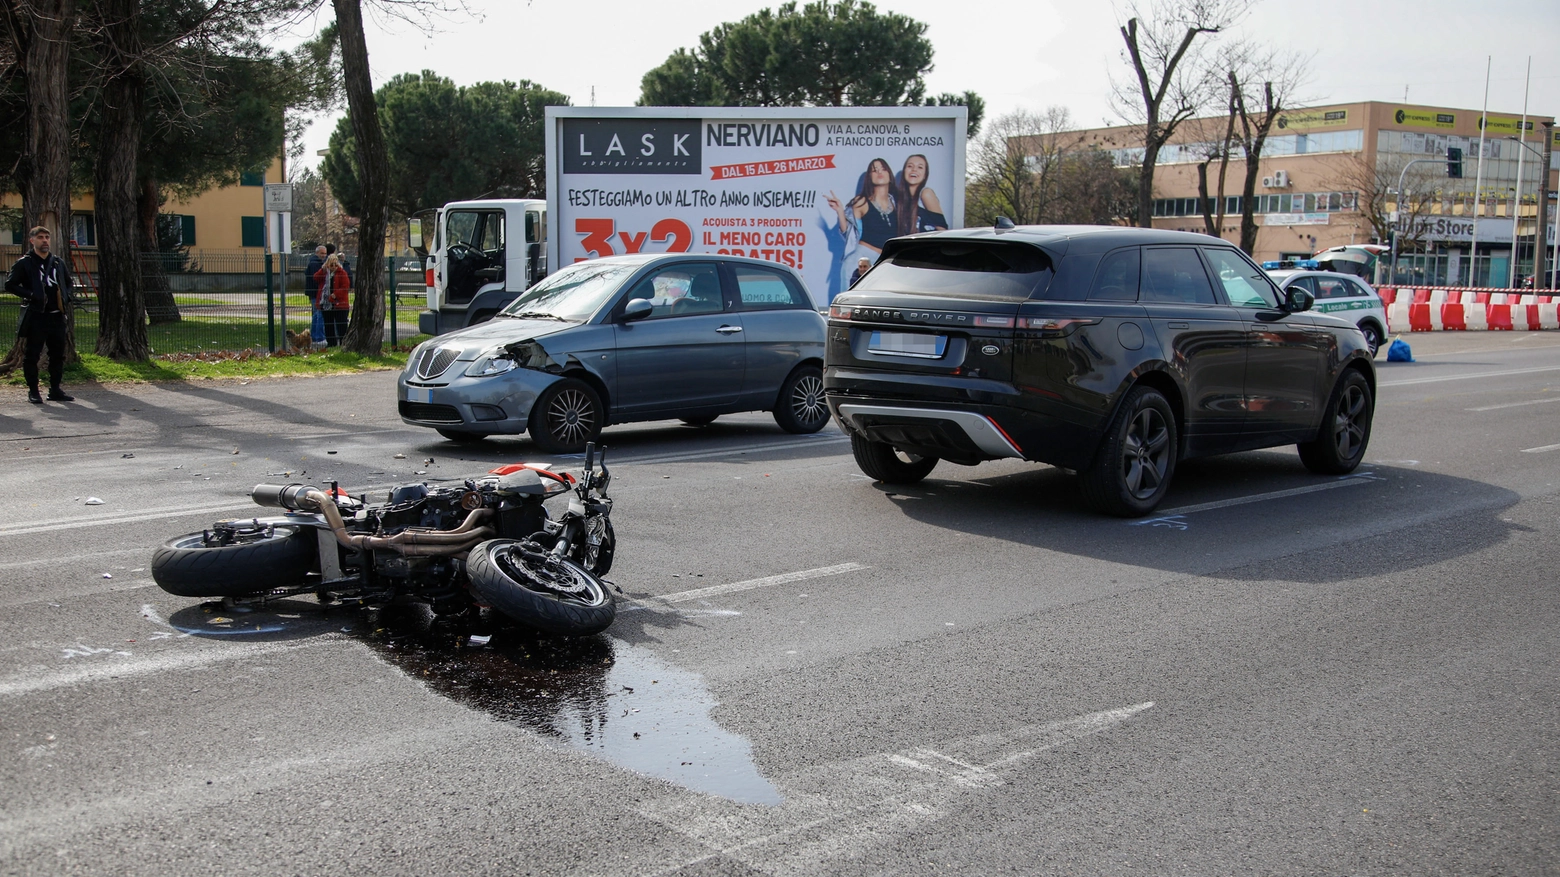 La moto sull'asfalto nell'incidente di Pogliano Milanese